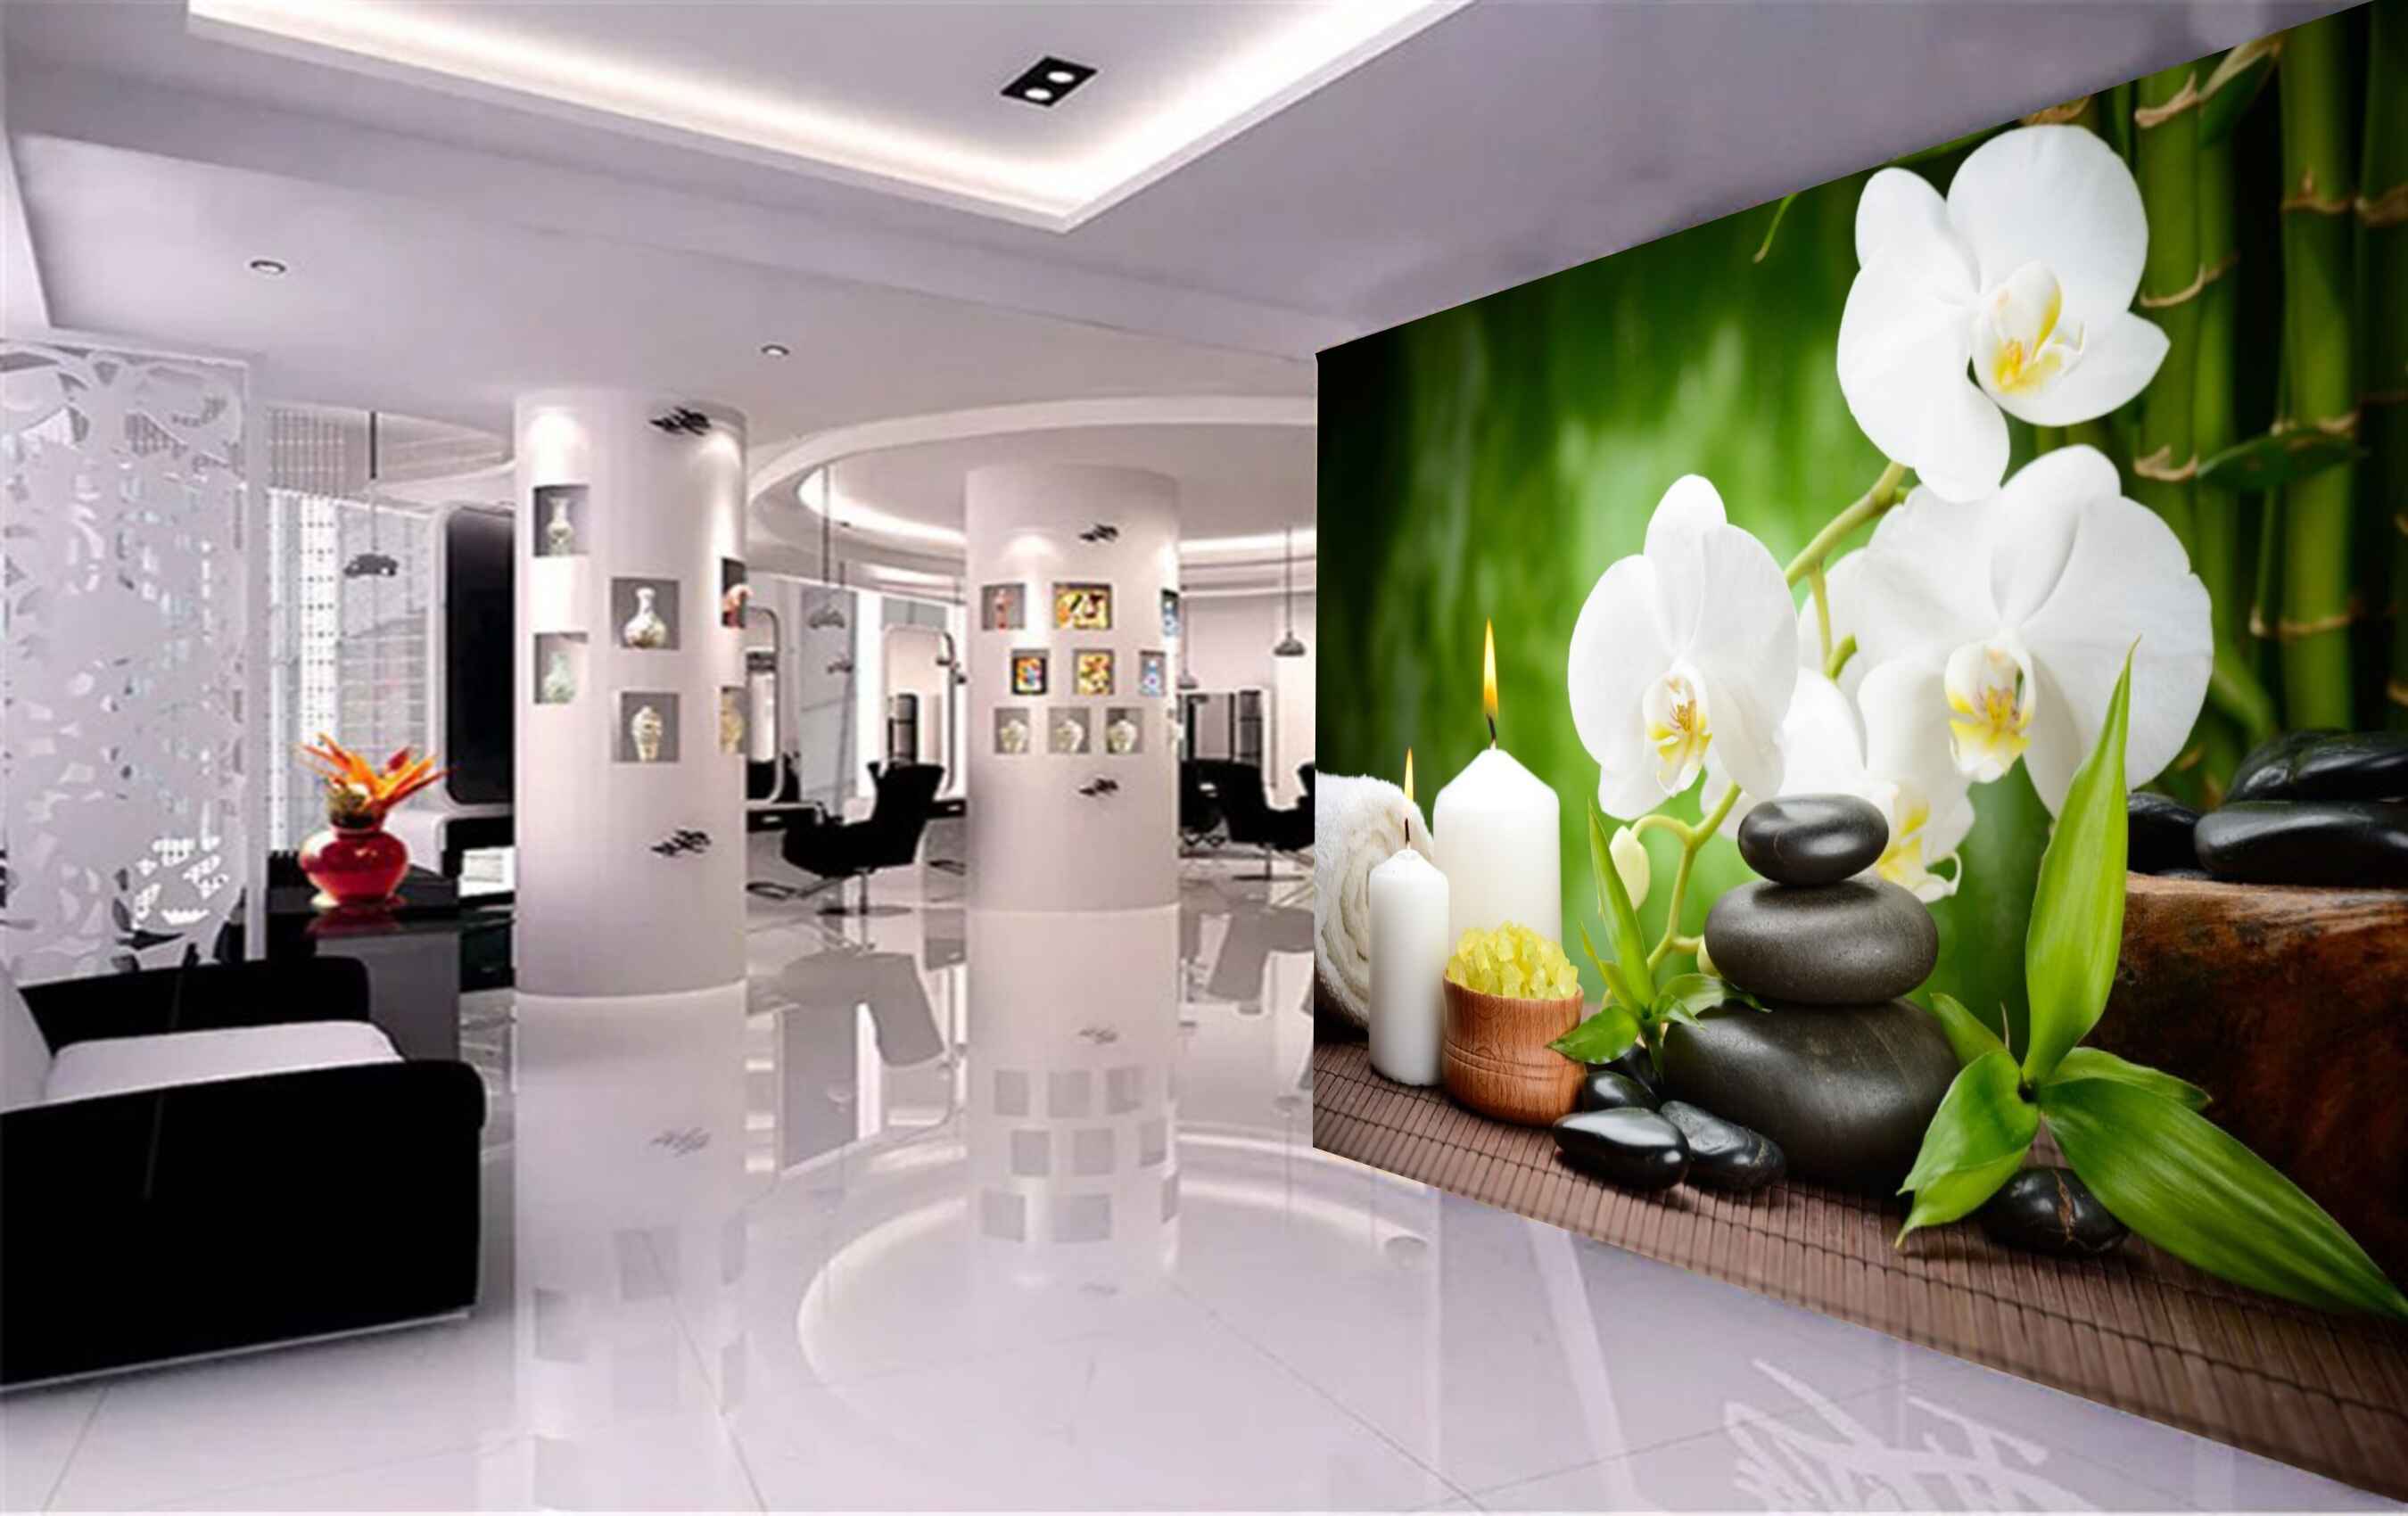 Avikalp MWZ3688 White Flowers Candles Leaves Stones Blanket HD Wallpaper for Spa